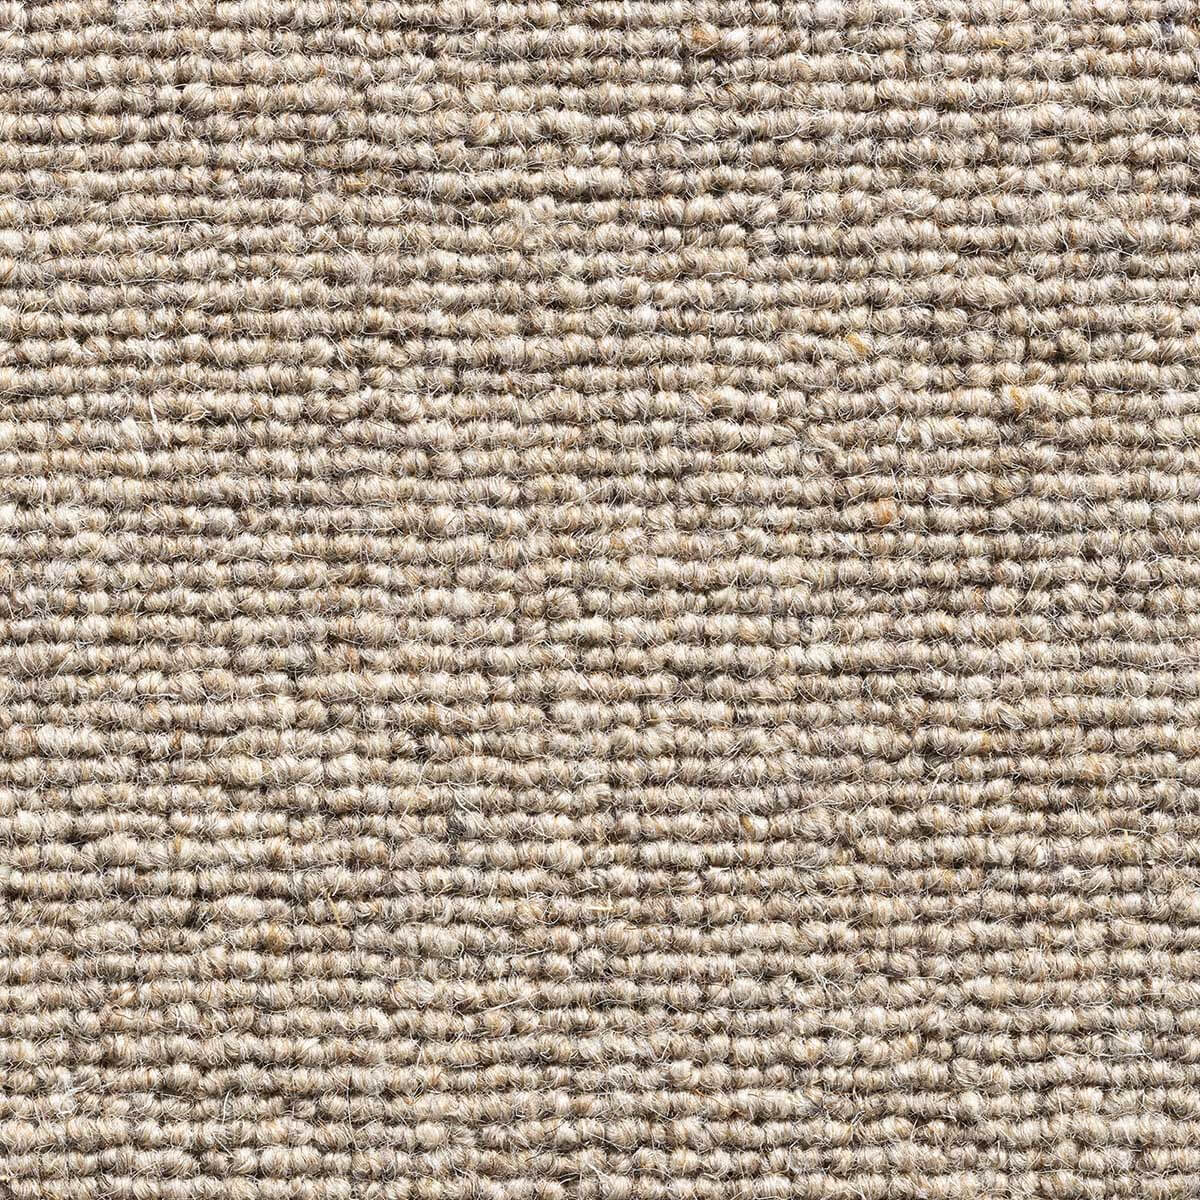 Glen Loop Wool Carpet - Harvest 292